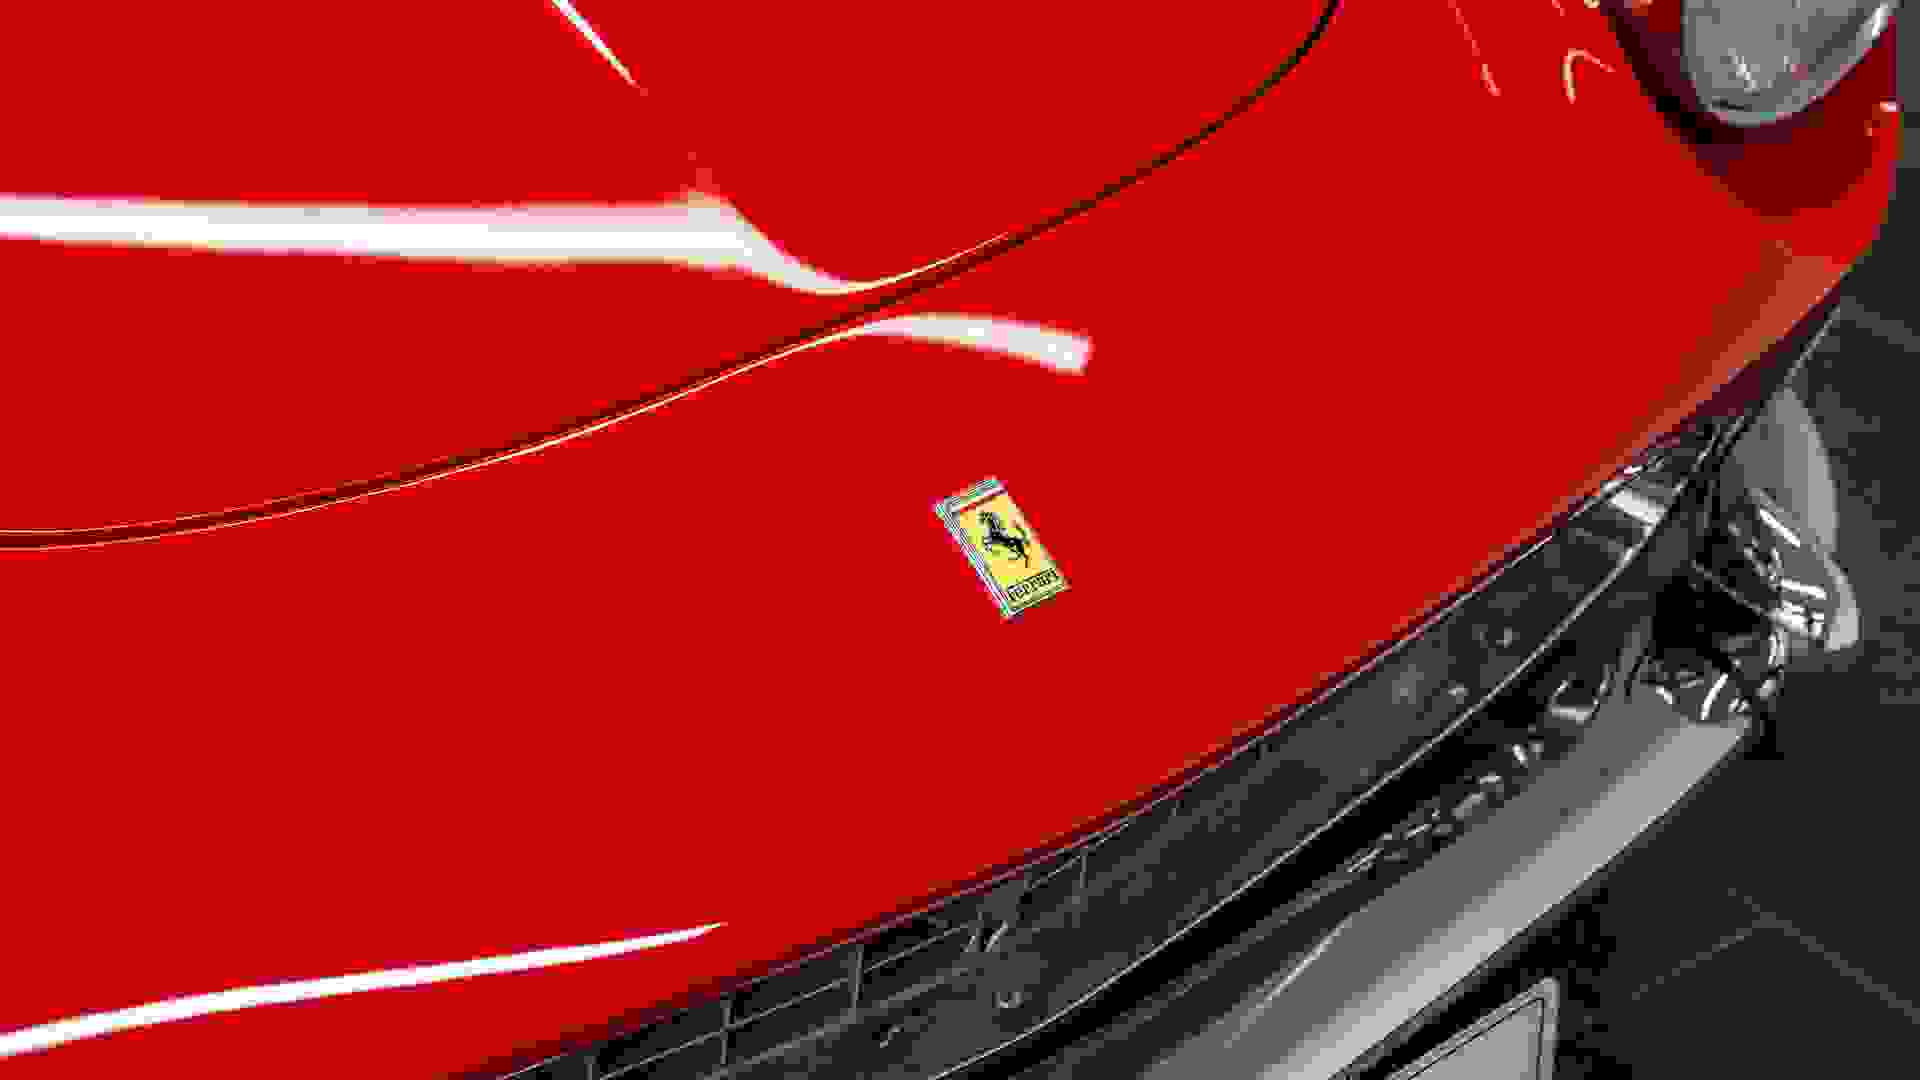 Ferrari 275 GTS Photo 59c67d33-8b8a-4868-a9fd-073b5c4d468b.jpg